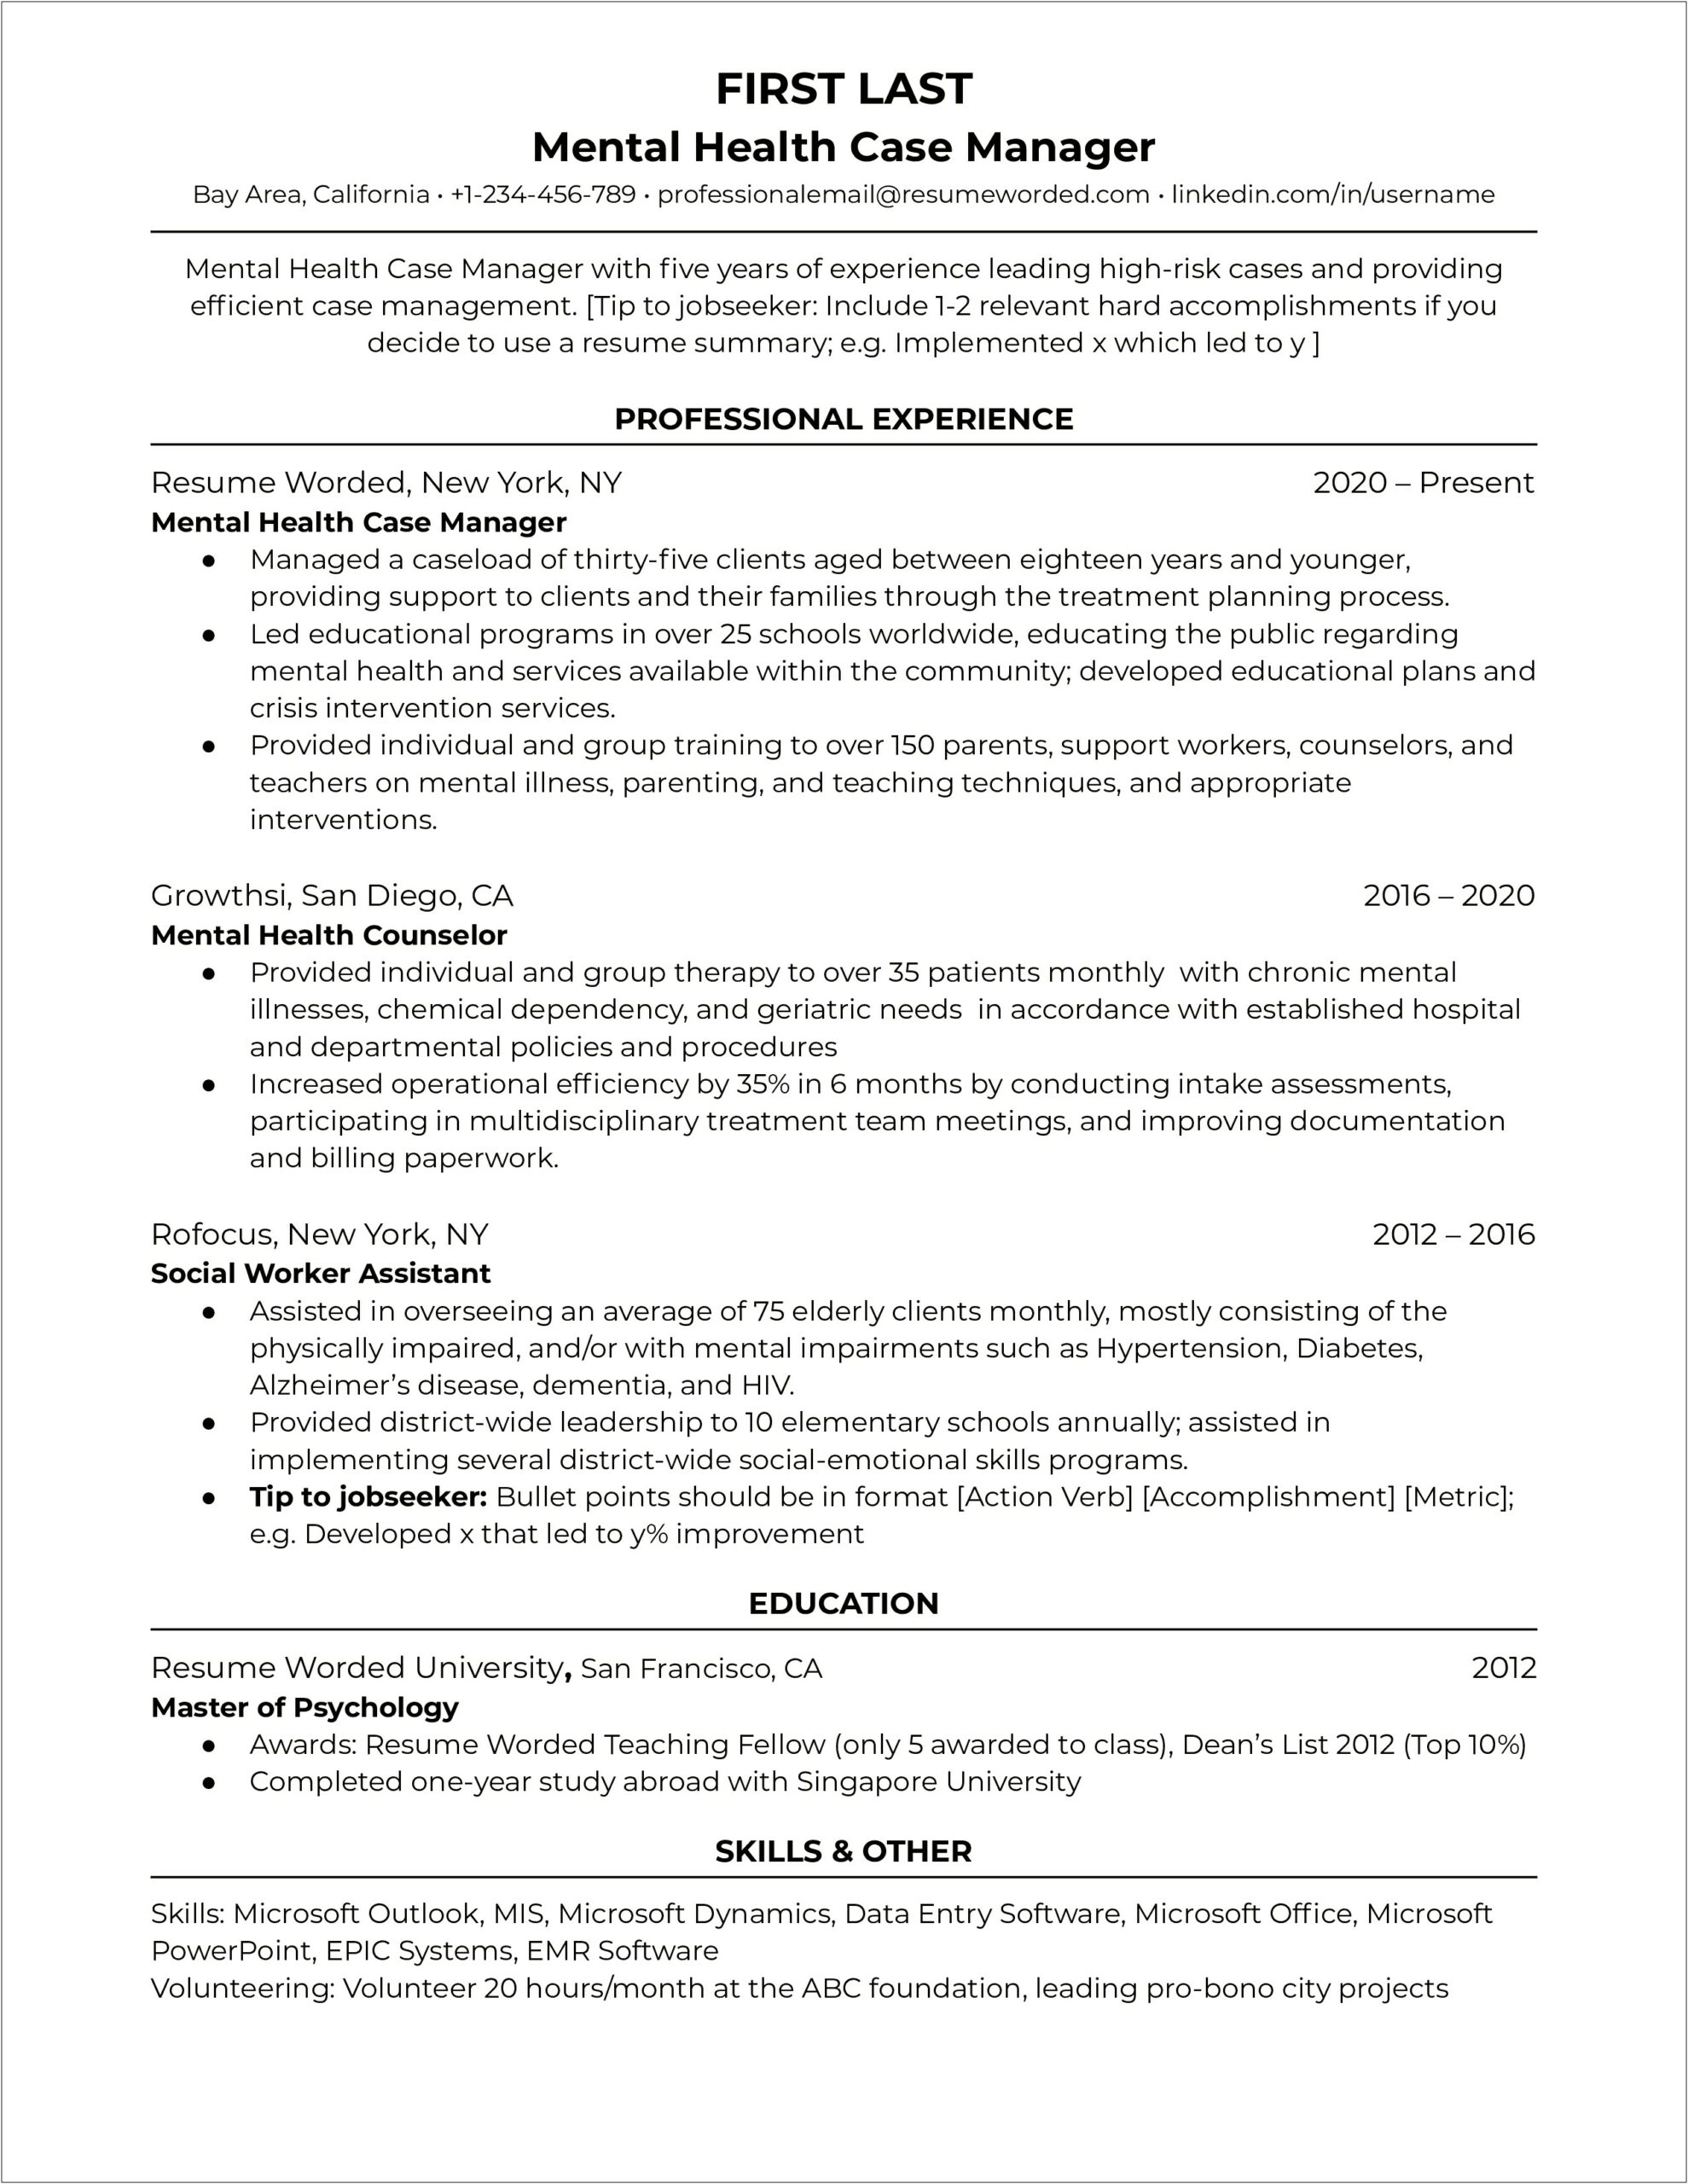 Resume For Home Health Casemanager Job Skills